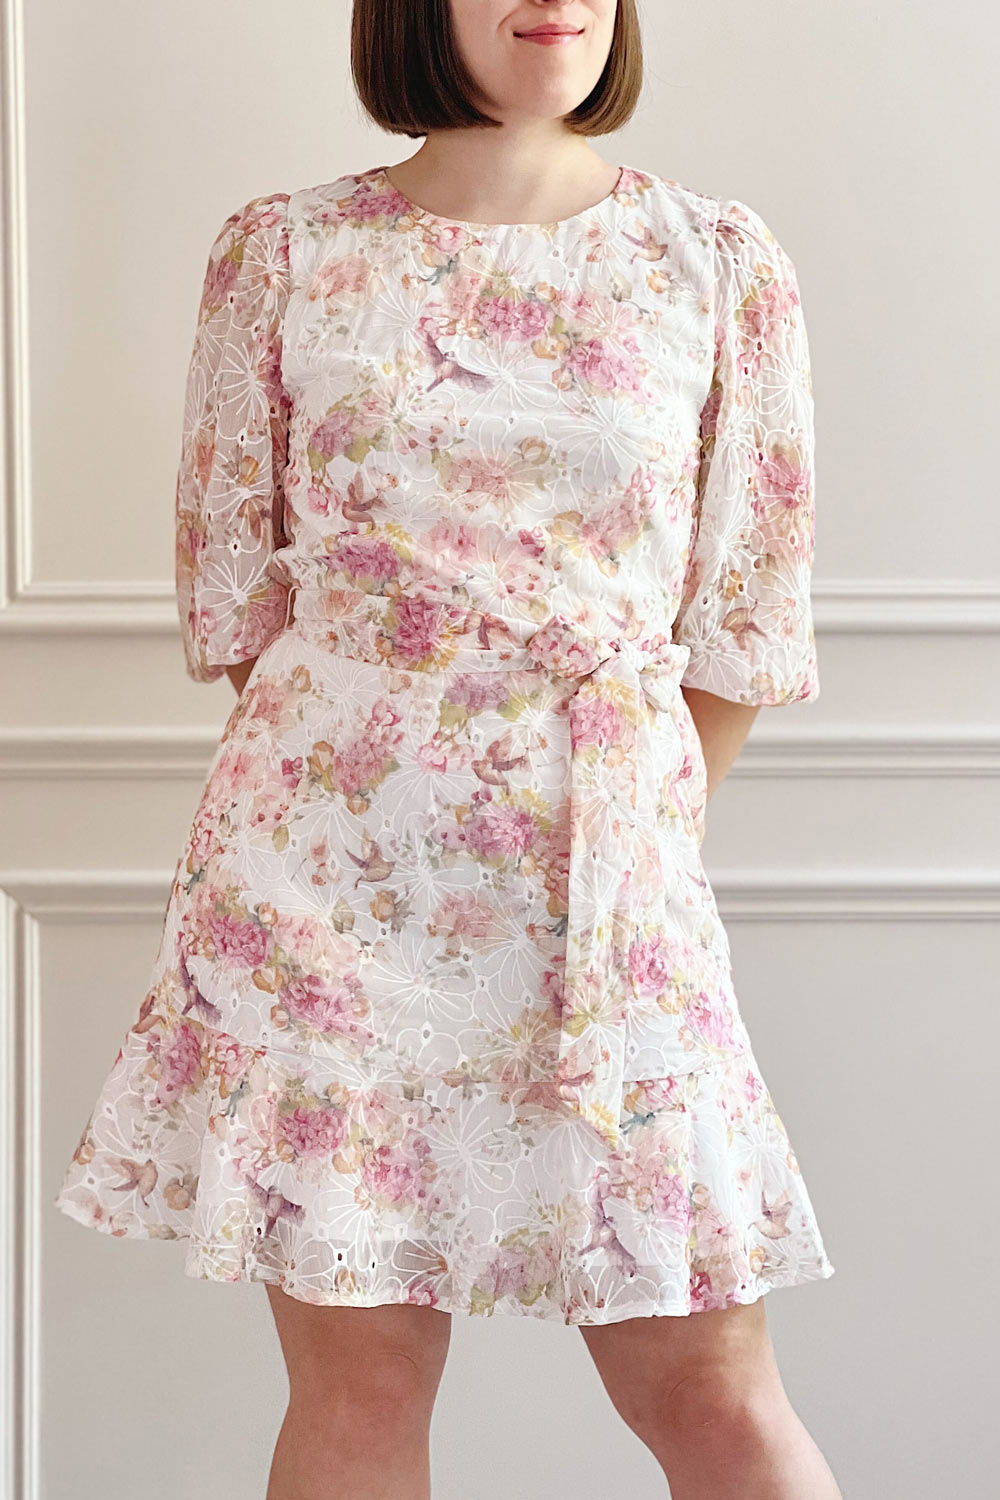 Paratina | Short Openwork Floral Dress- Boutique 1861 on model